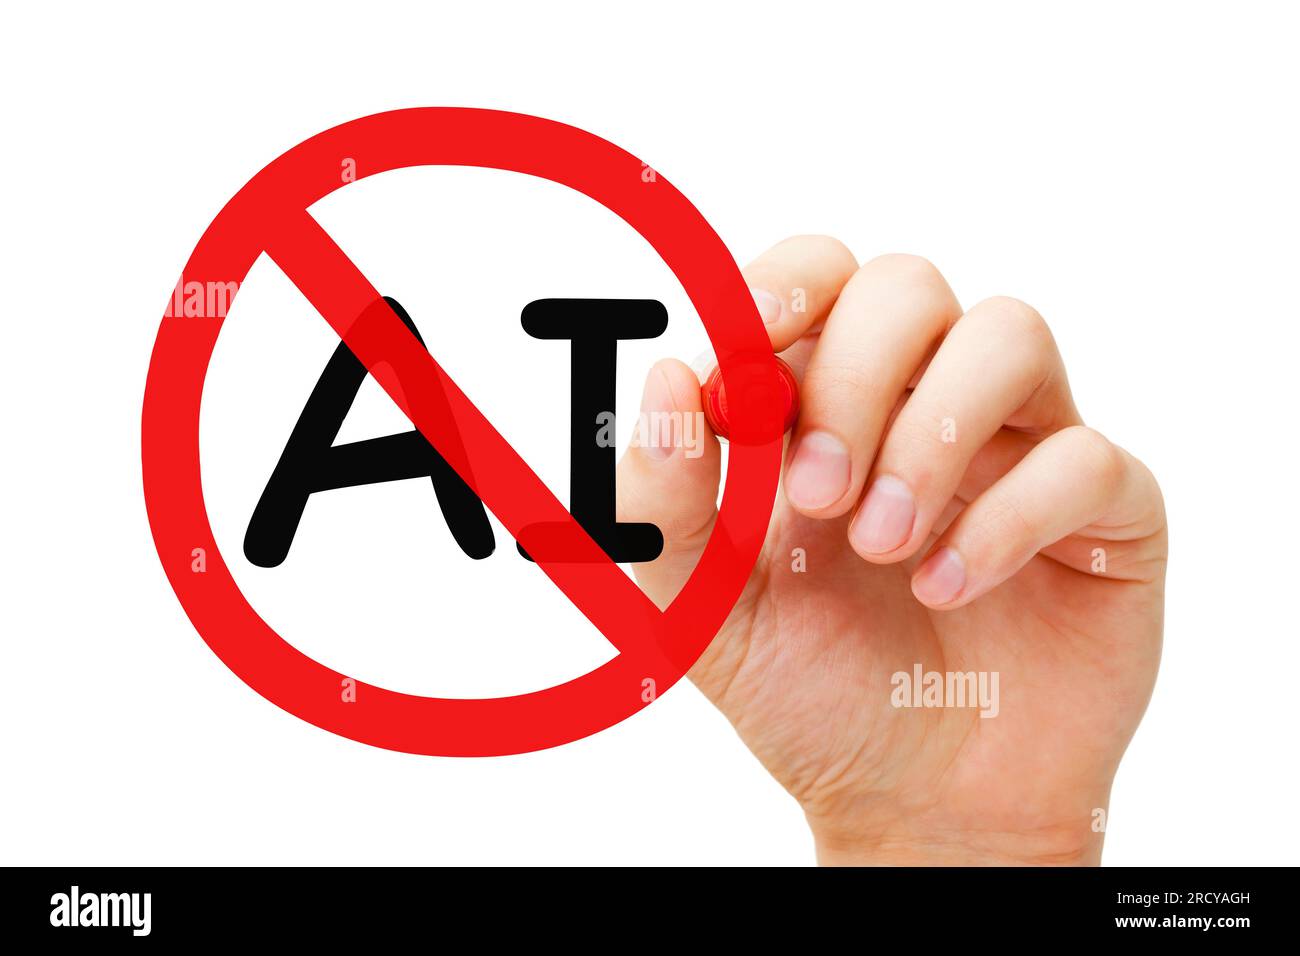 Handzeichnen von AI Artificial Intelligence Prohibition Schild Konzept mit Markierung isoliert auf weißem Hintergrund. Stockfoto